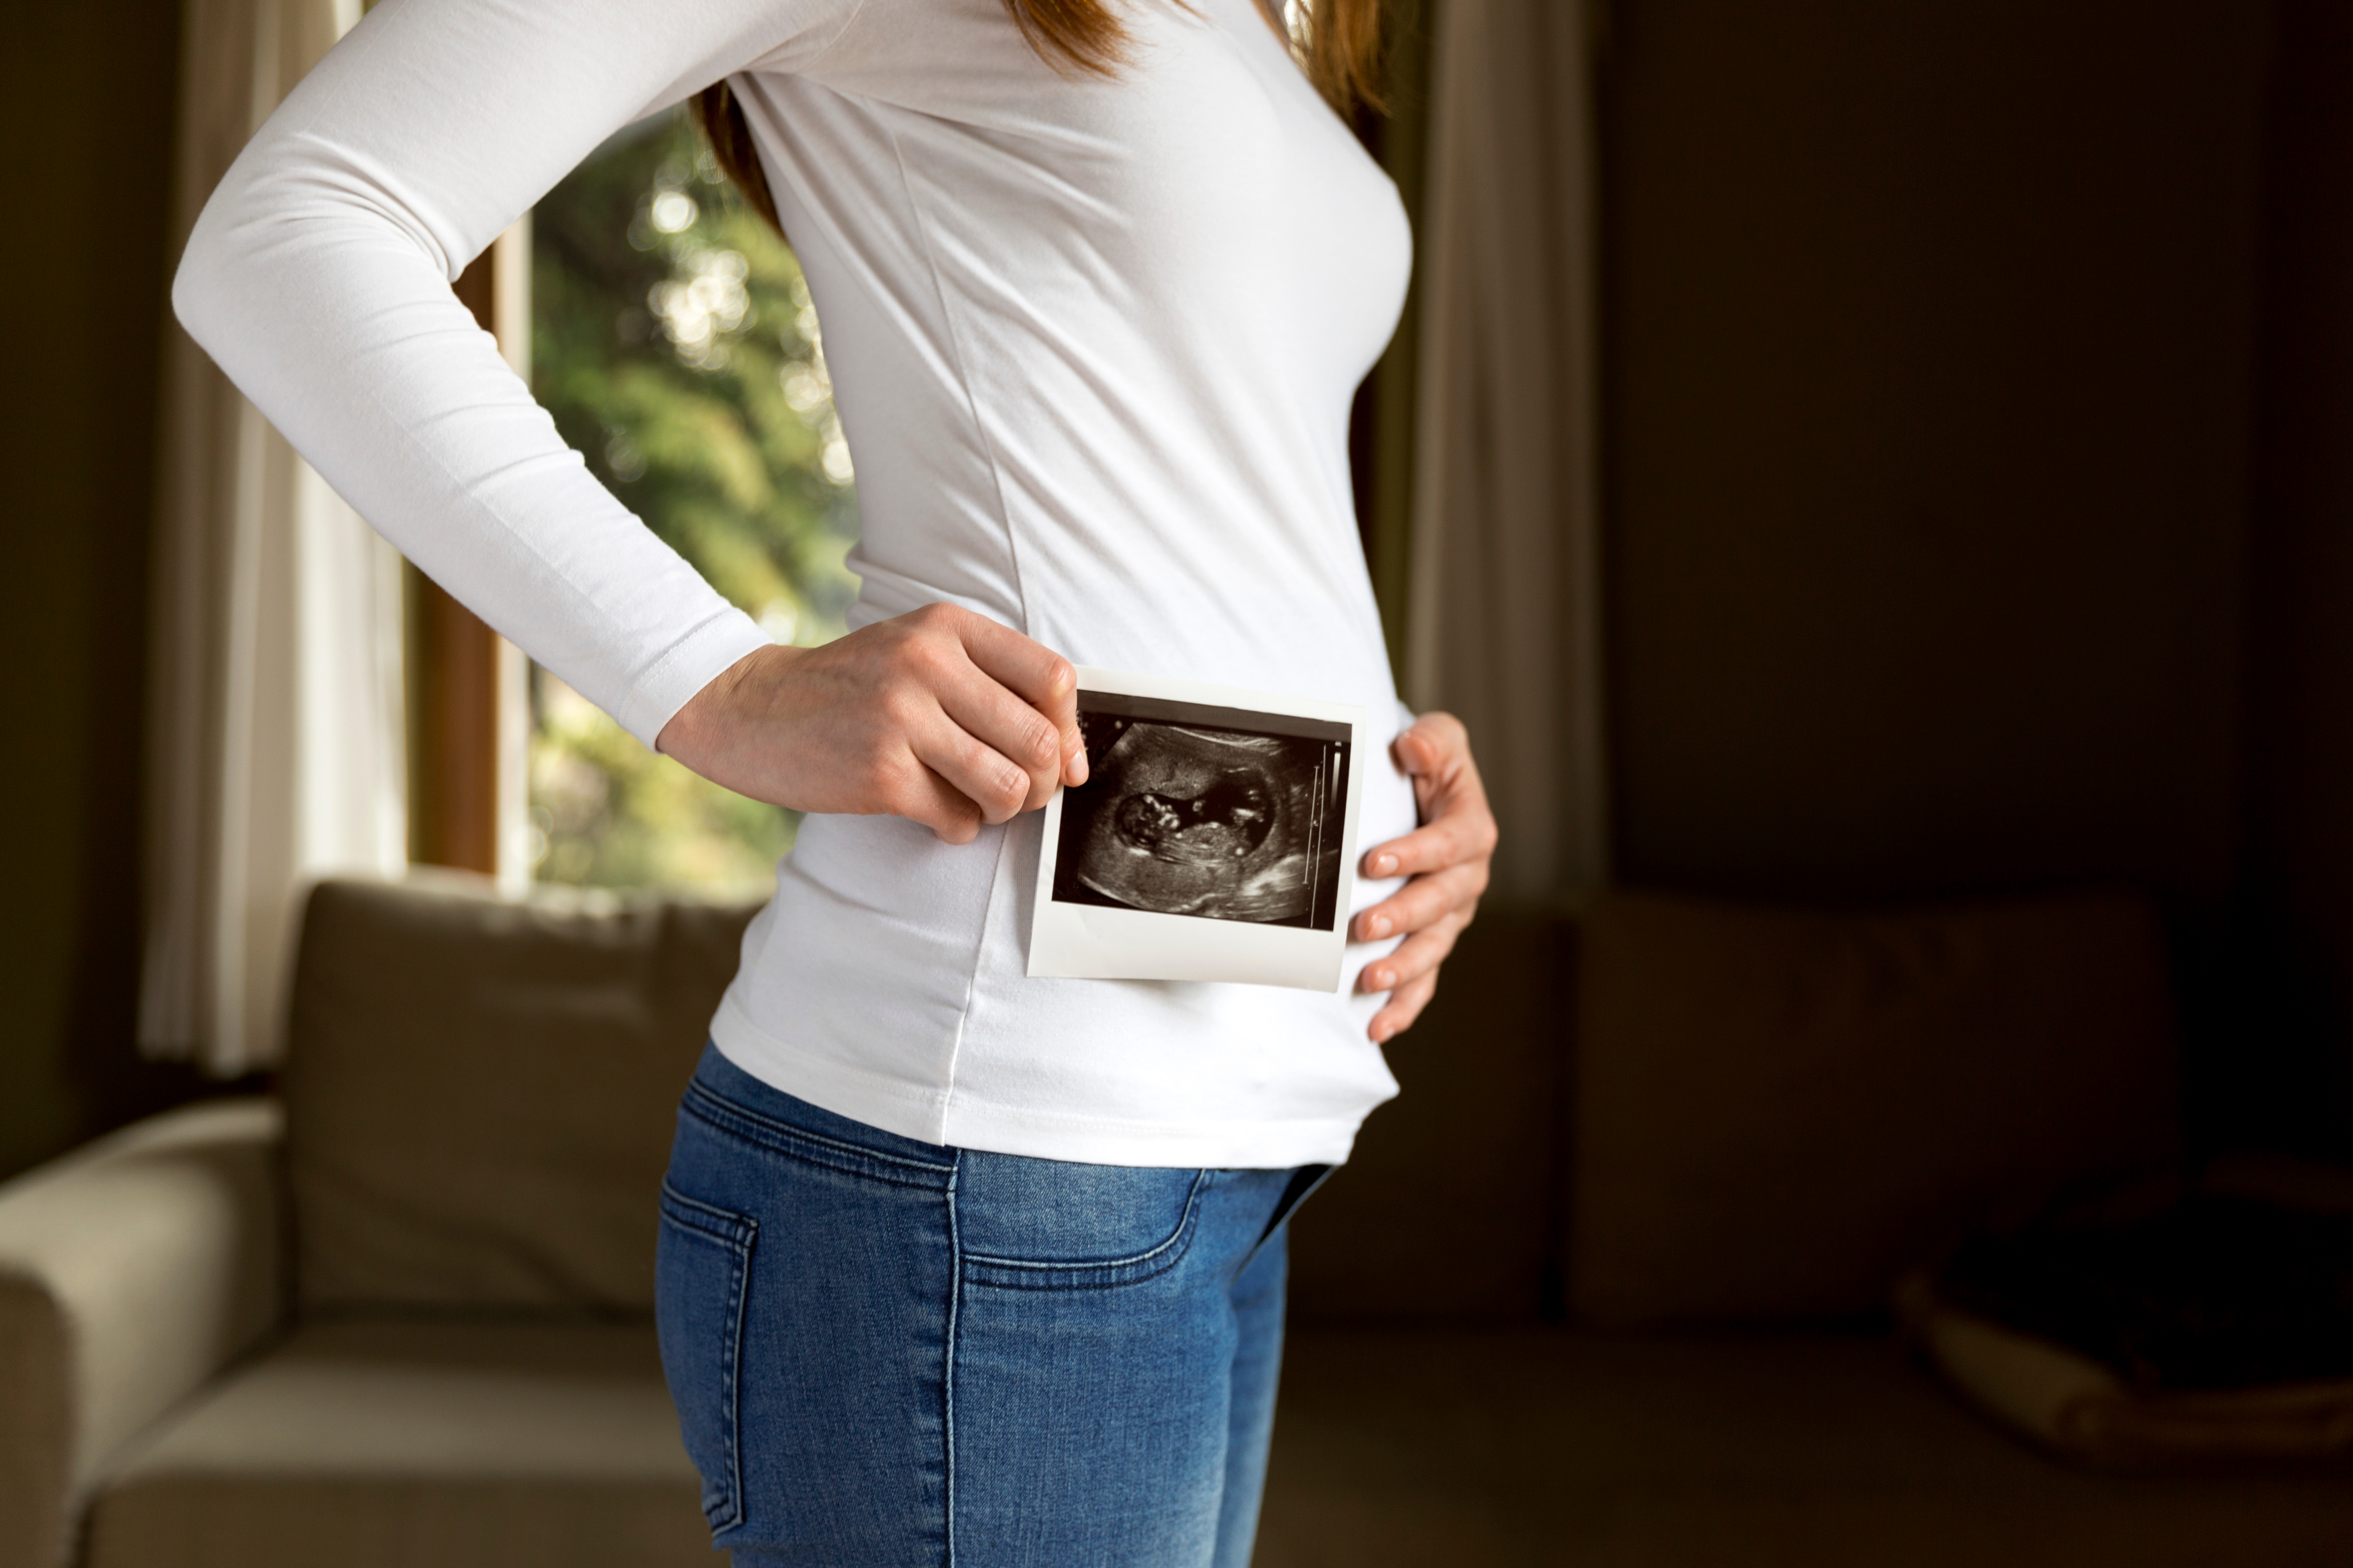 A woman holding an ultrasound scan | Source: Shutterstock